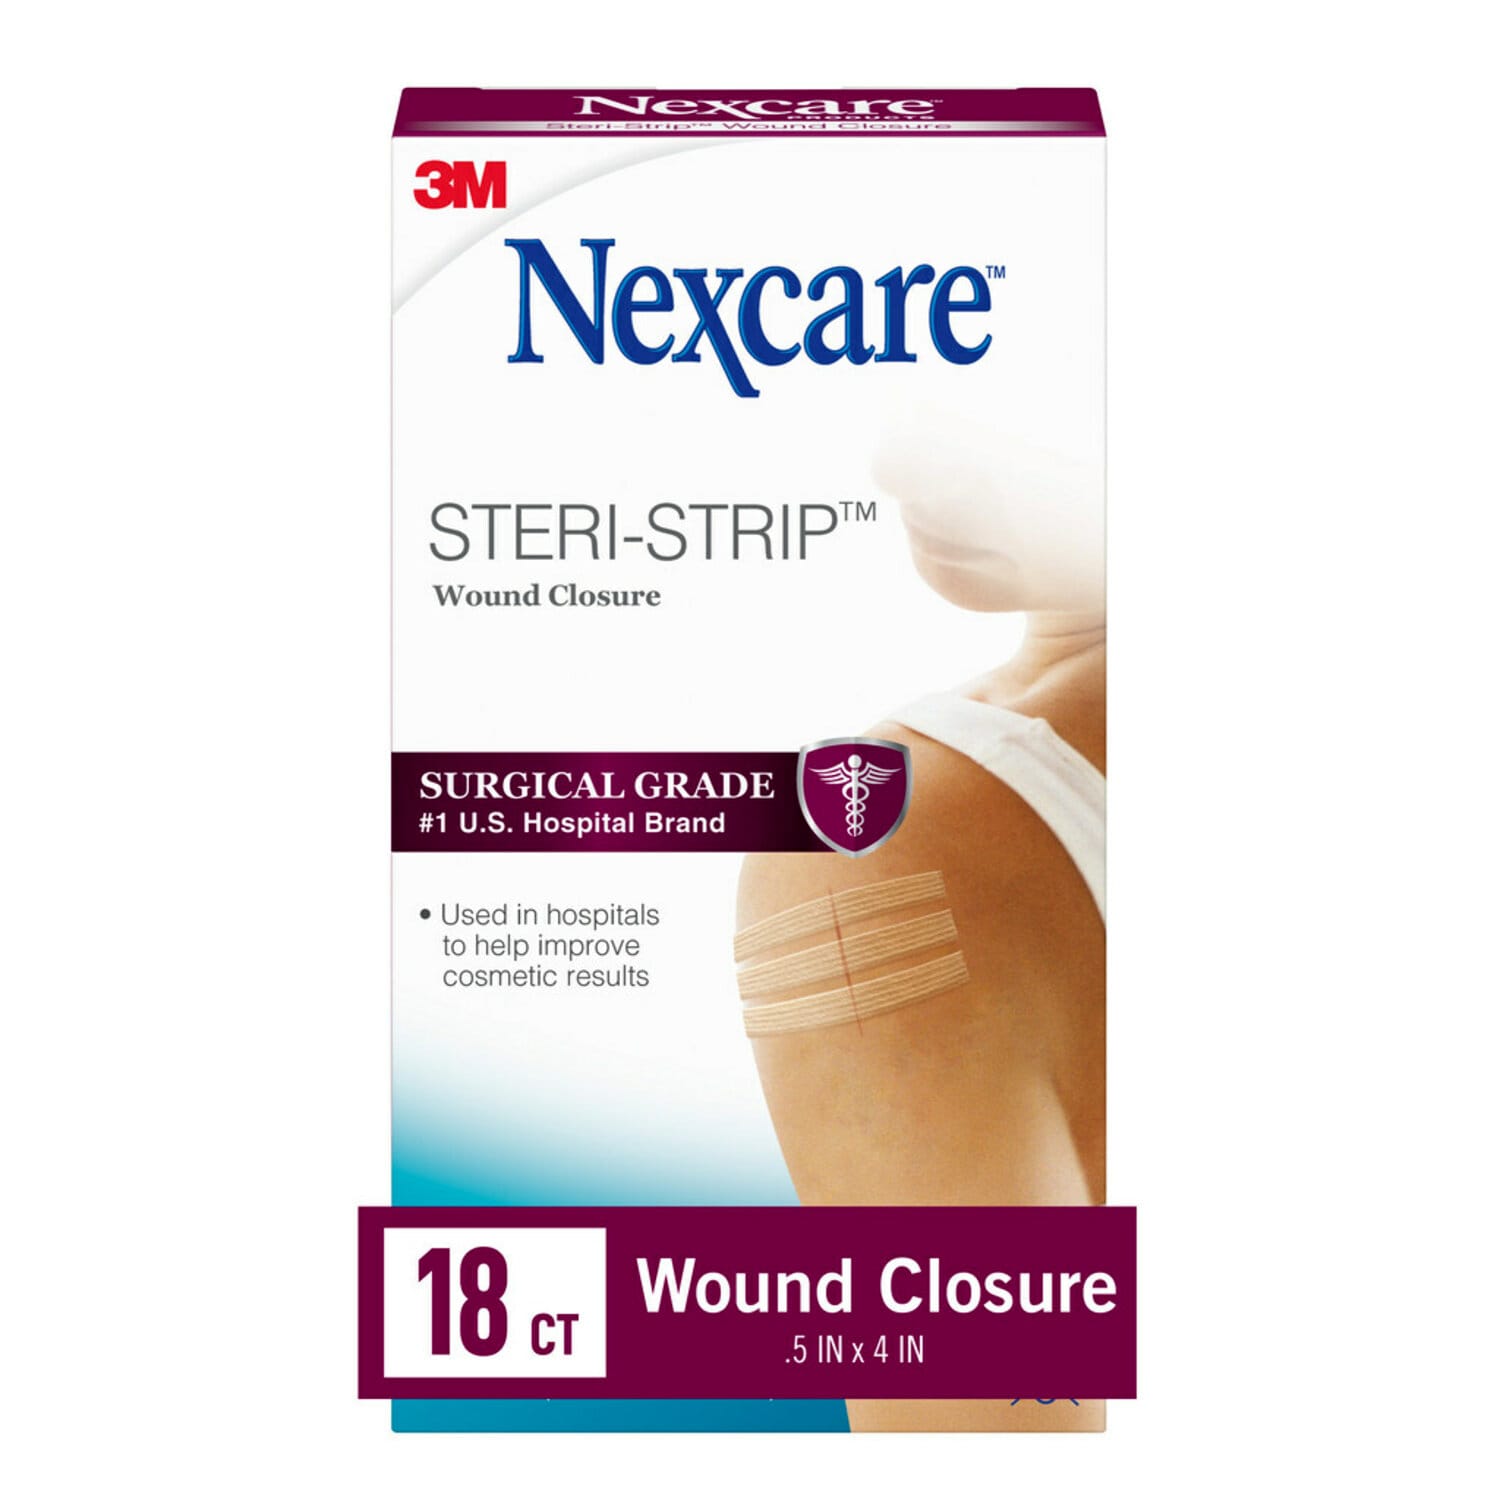 7100223136 - Nexcare Steri-Strip Wound Closure H1547, 1/2 in x 4 in (12 mm x 100 mm), 18 ct